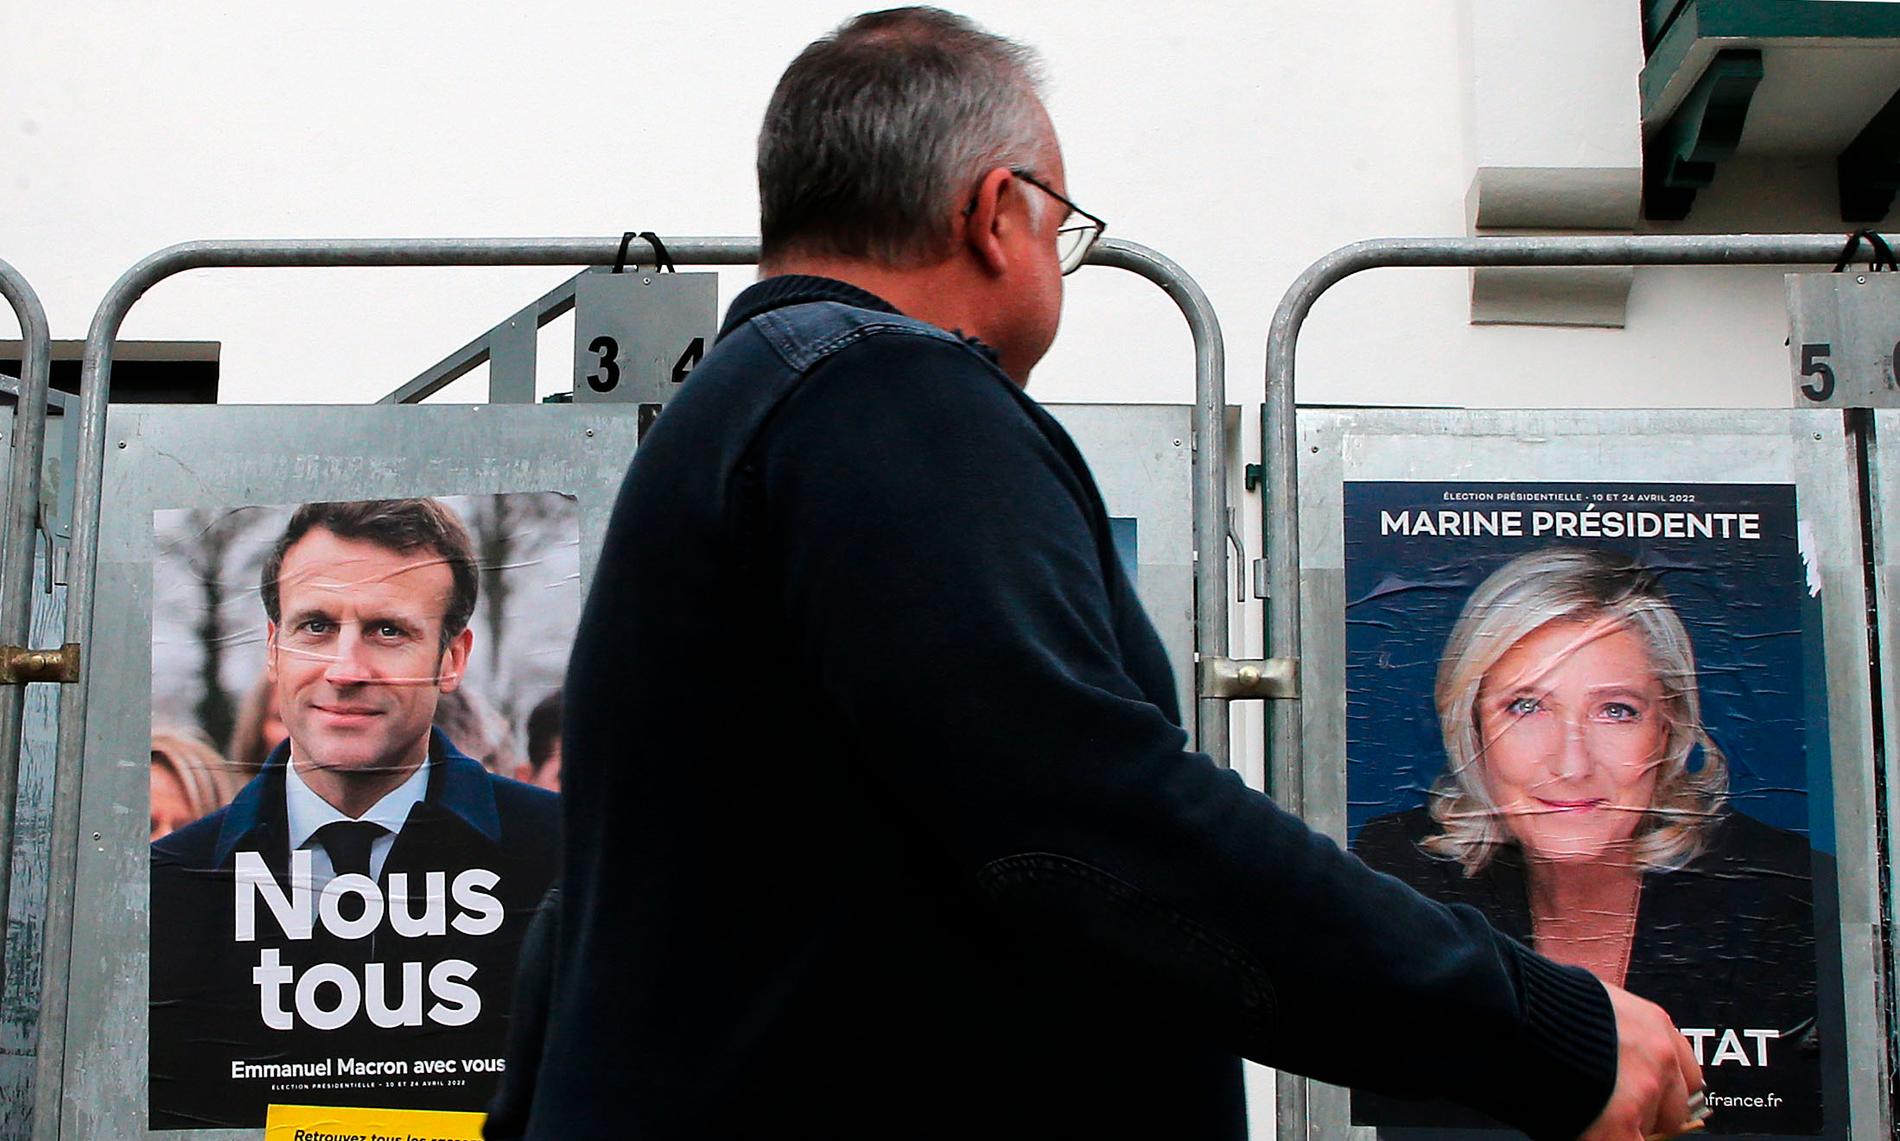 Men nu är alla övriga kandidater glömda. Allt ljus är på president Macron och utmanaren Marine Le Pen. 